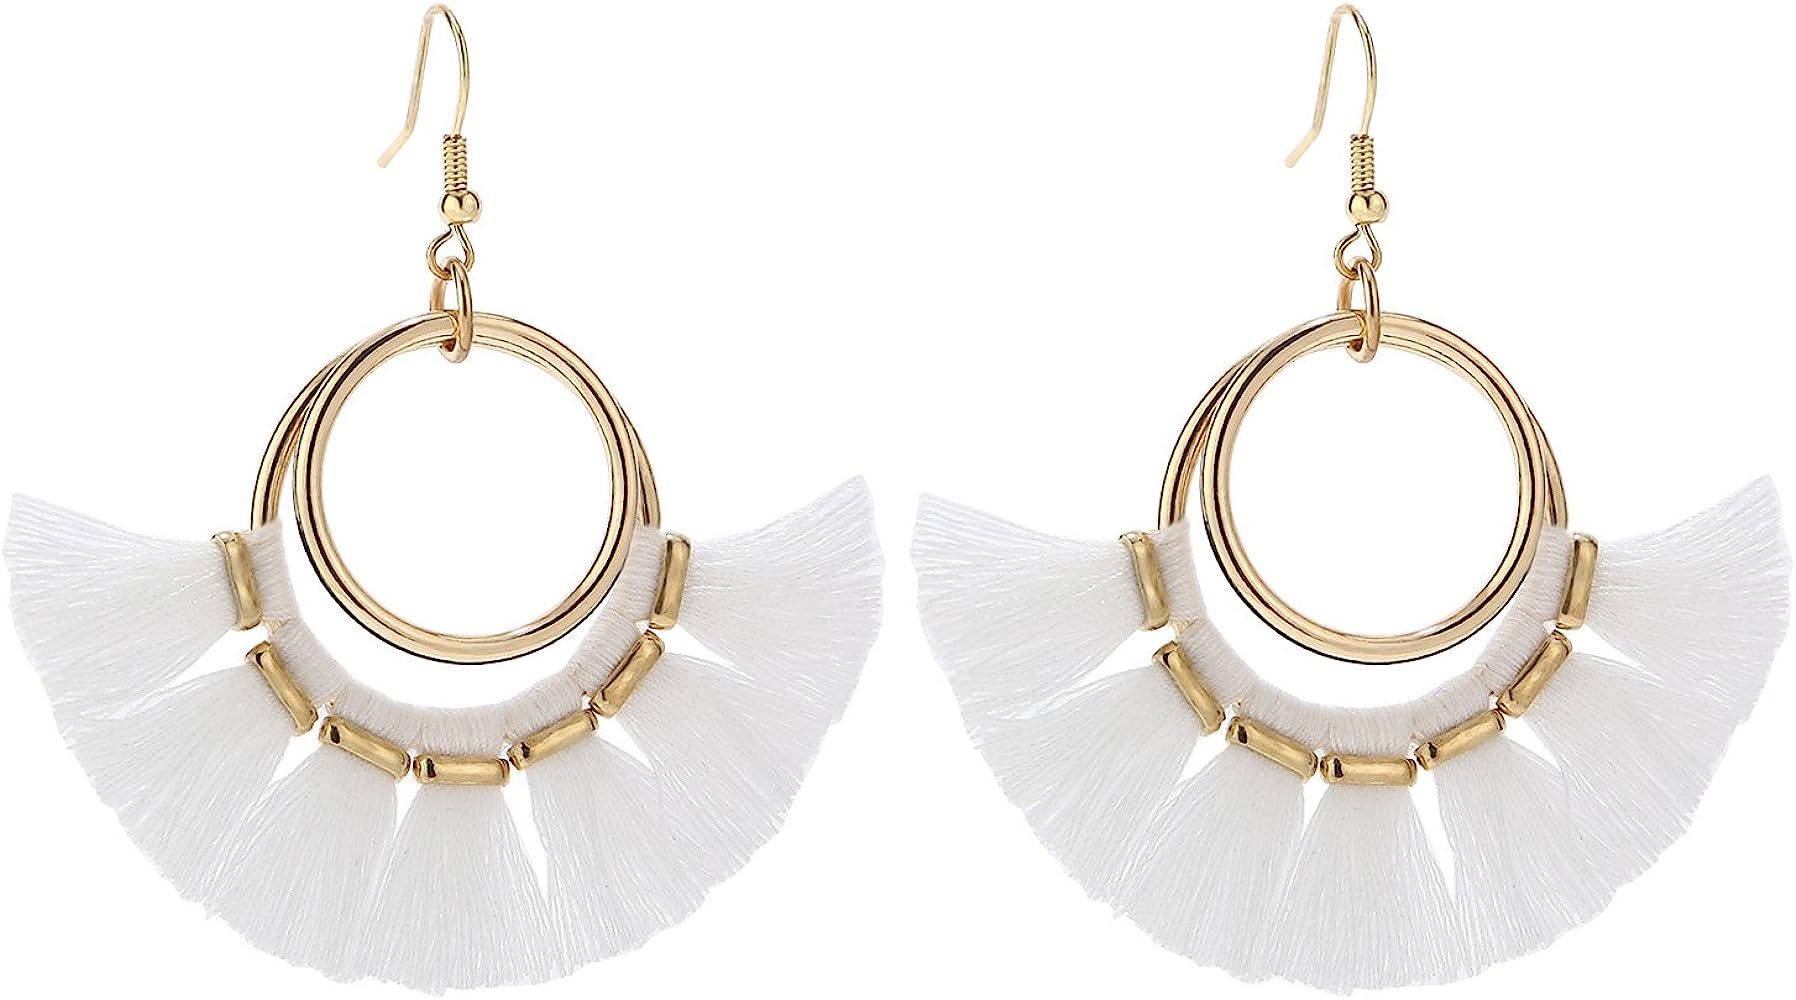 BaubleStar Tassel Hoop Earrings Fringe Drop Gold Tone Circle Tiered Earrings for Women Girls | Amazon (US)